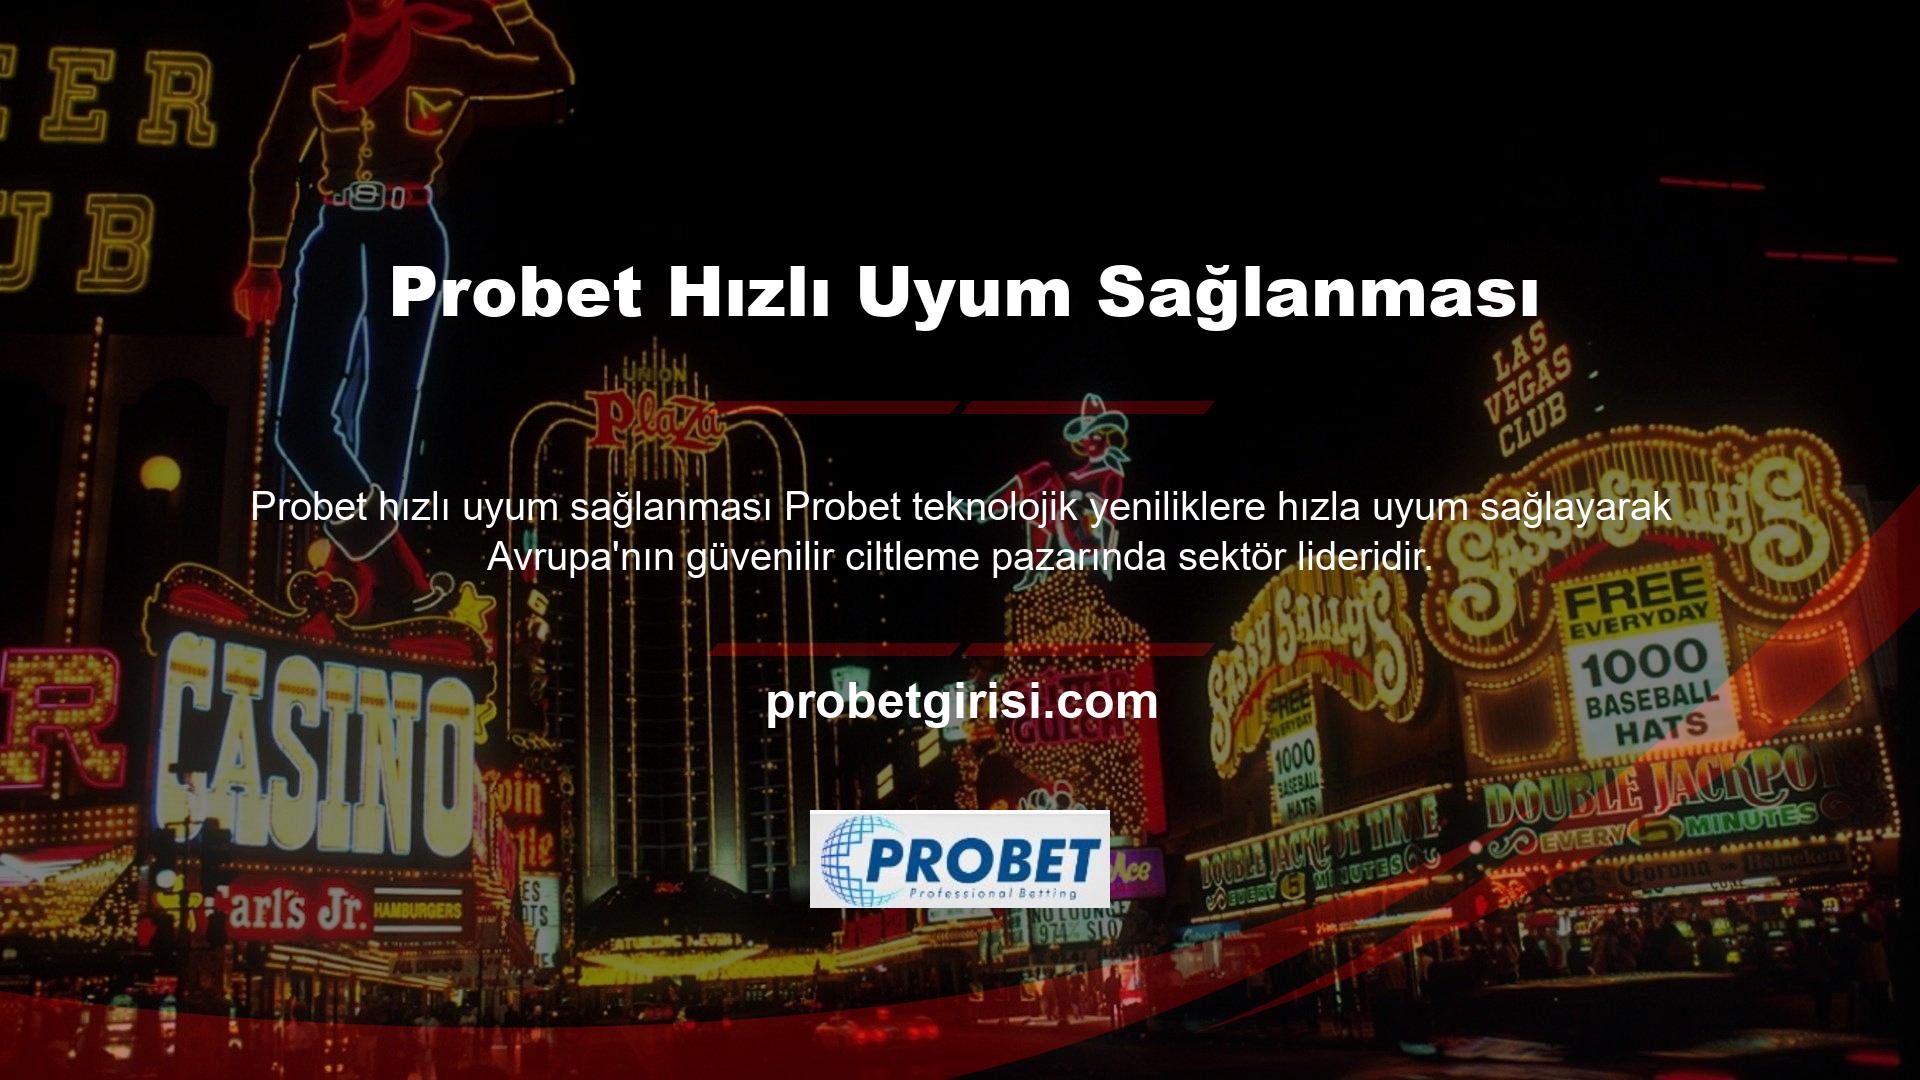 Probet, en etkileyici bahis sitelerinden biridir ve uzun süredir güvenilir bir şirket olarak bilinmektedir